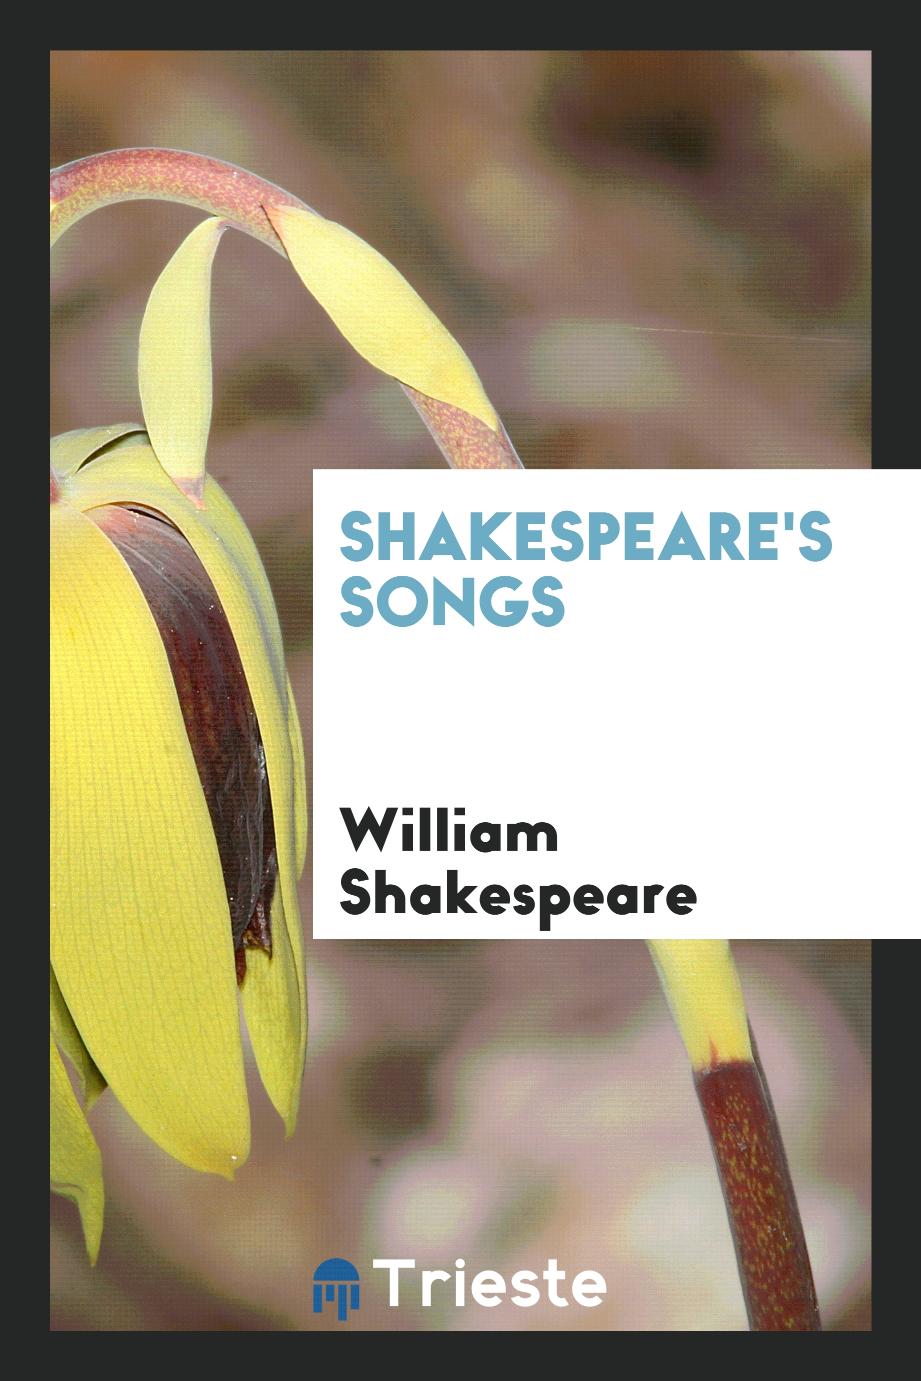 Shakespeare's songs